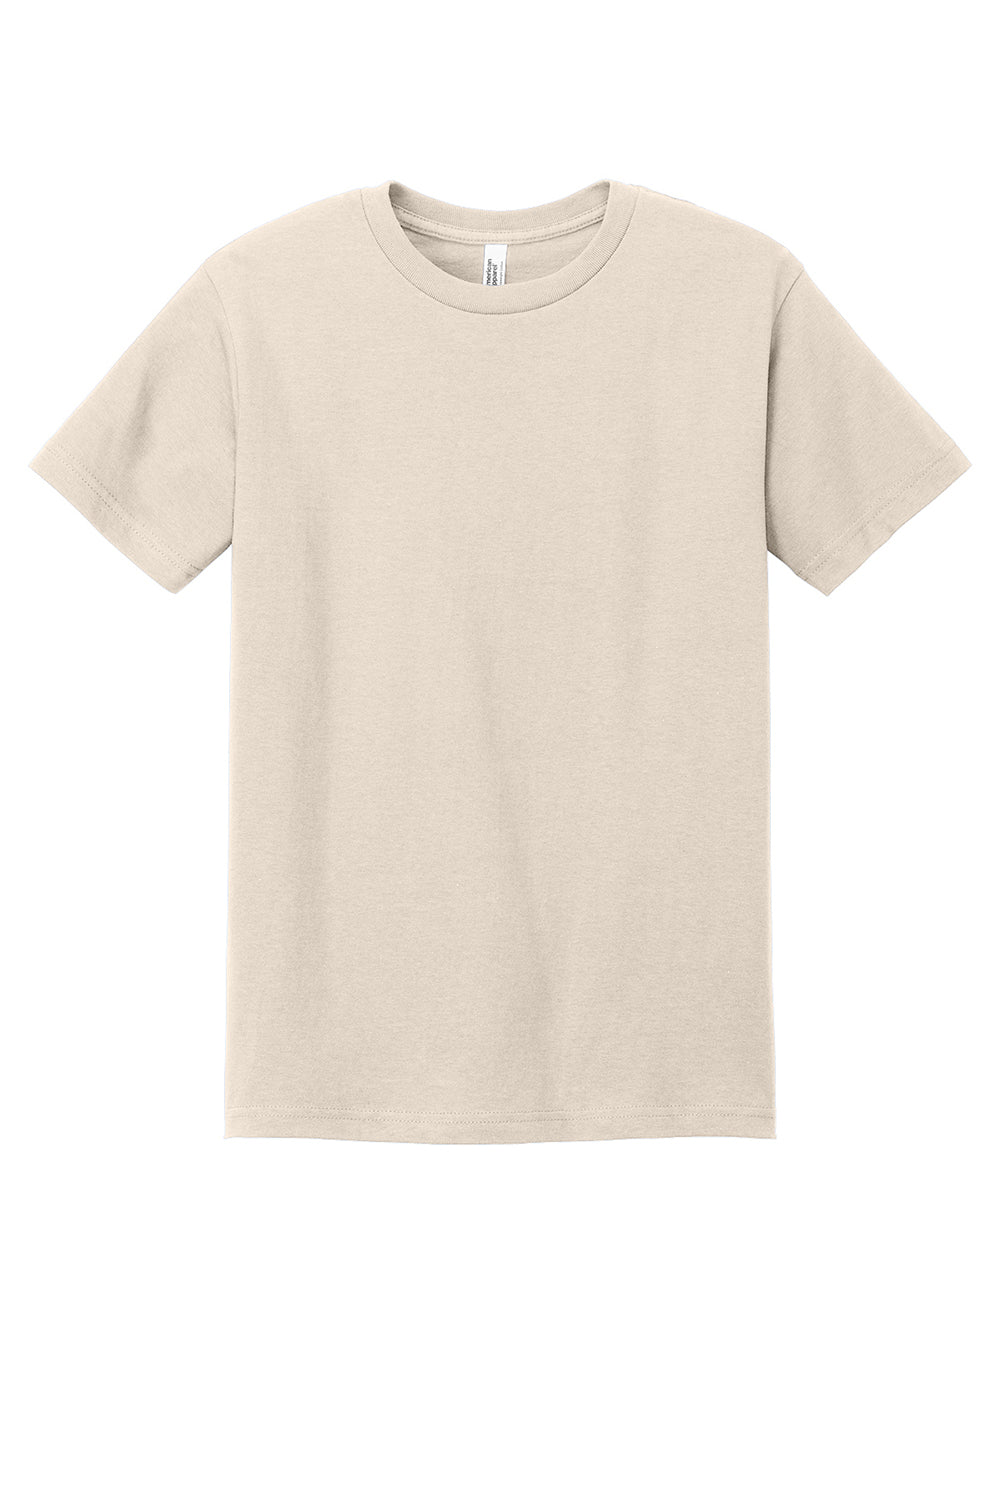 American Apparel 1301/AL1301 Mens Short Sleeve Crewneck T-Shirt Cream Flat Front